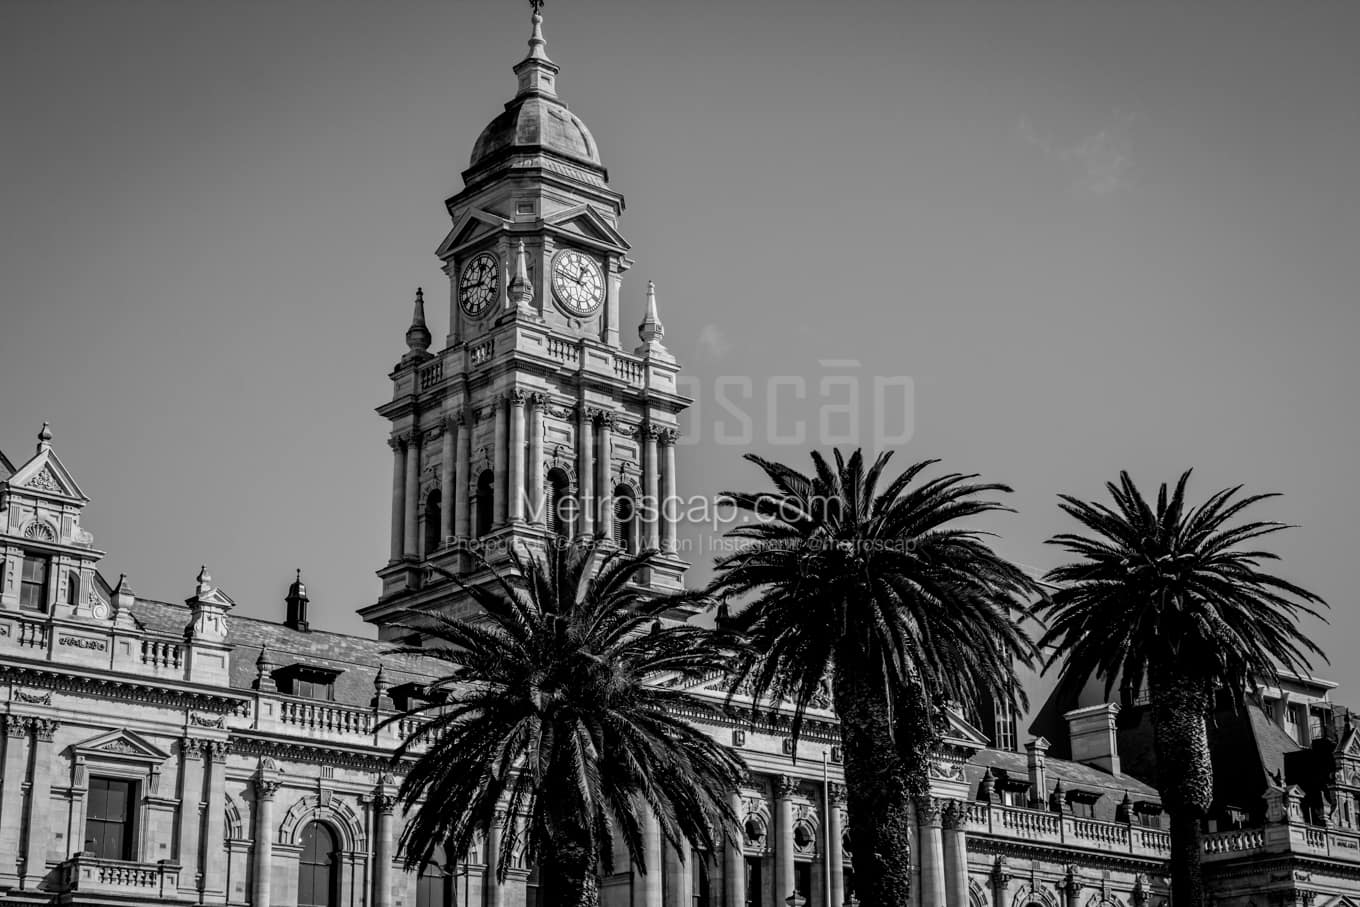 Black & White Cape Town Architecture Pictures